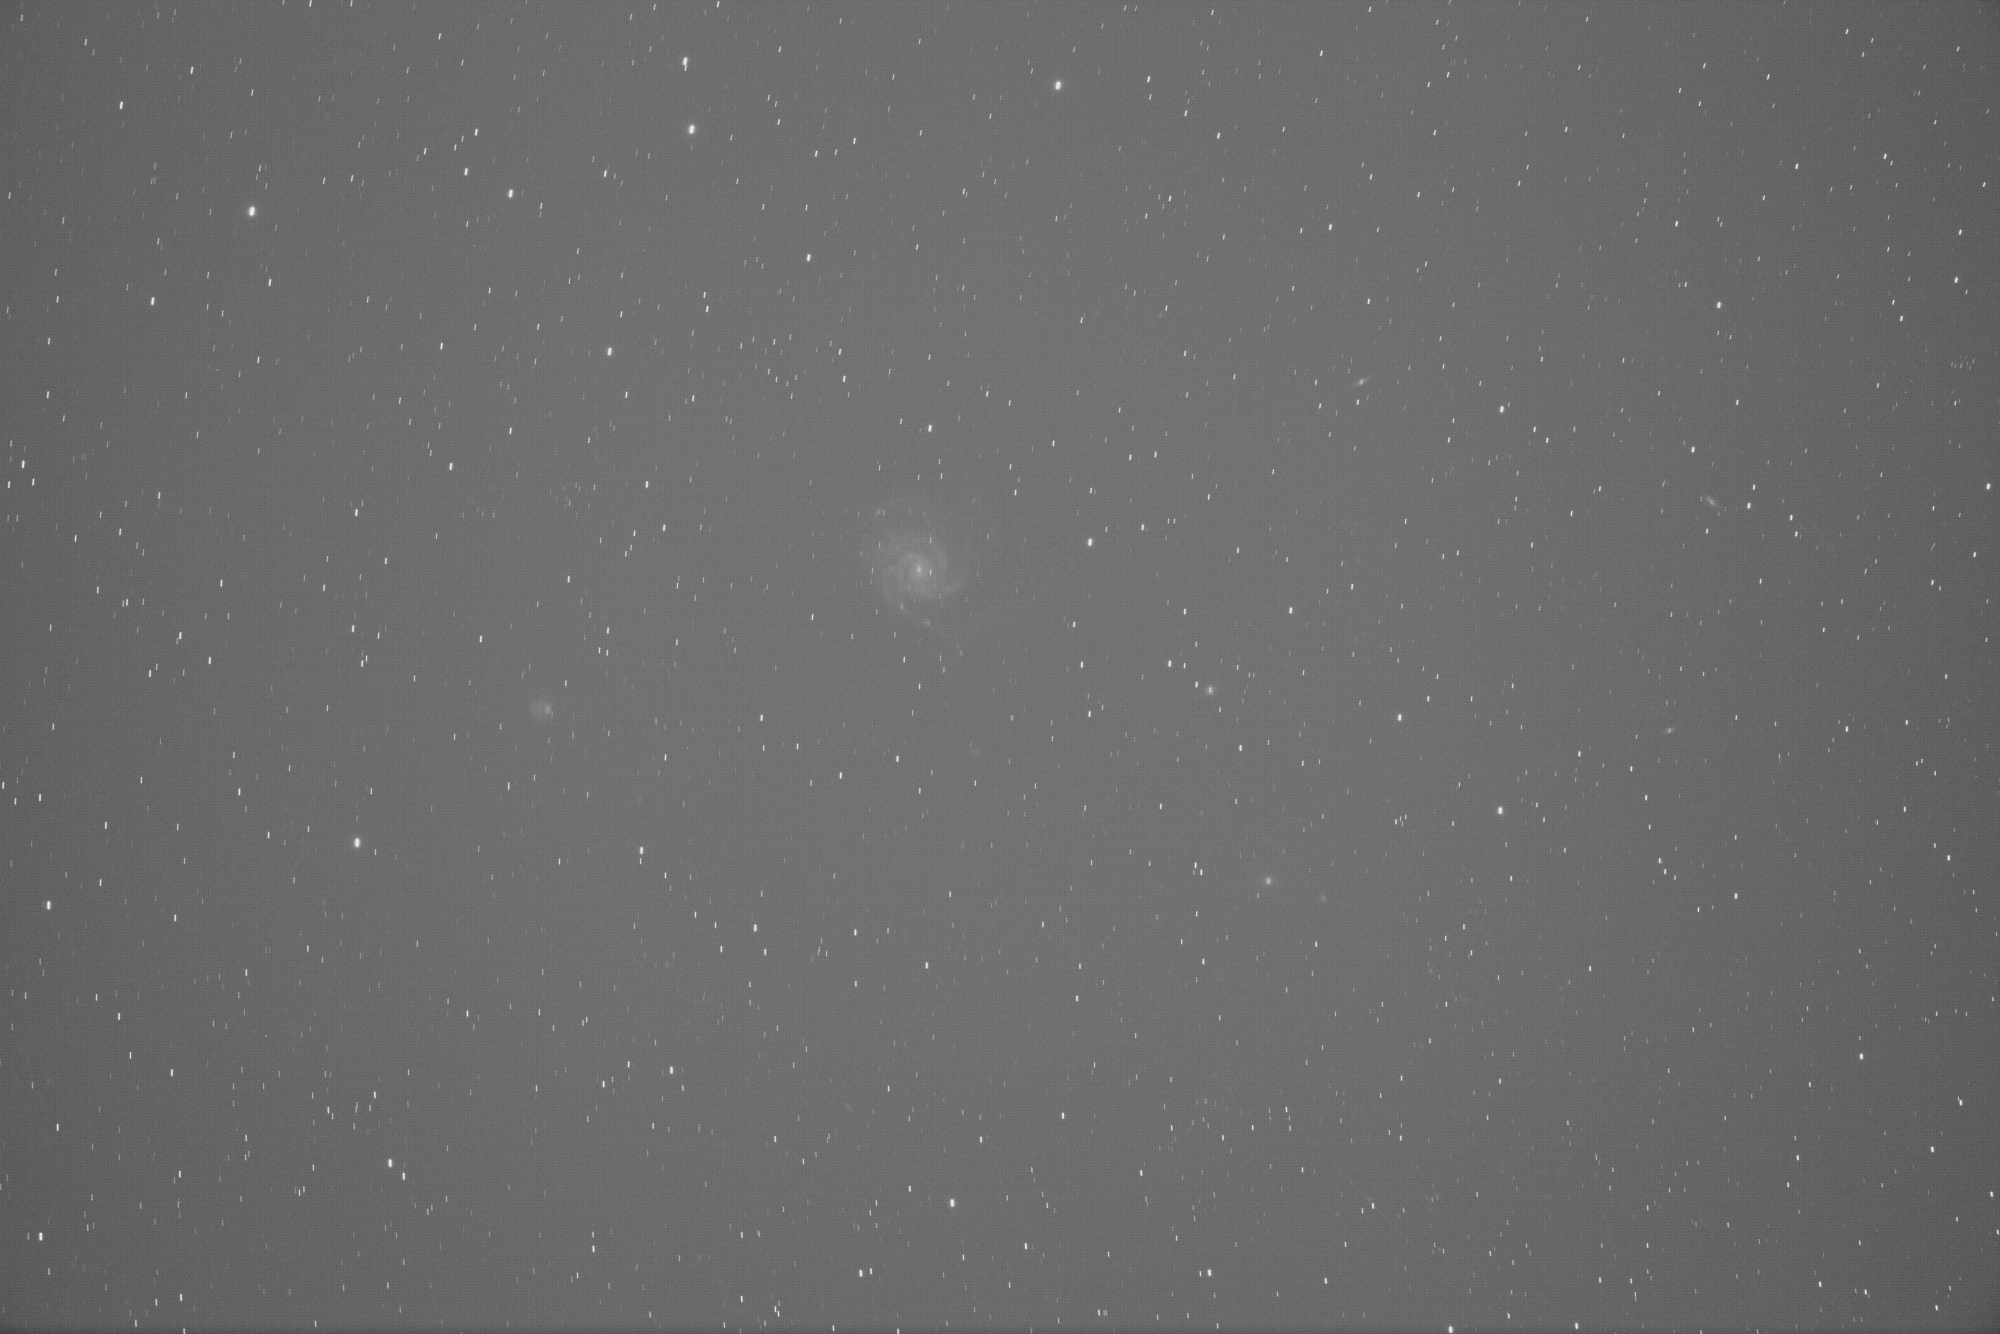 M101_Light_011-test.thumb.jpg.f3a6a525ed3dbaaf0f81e6d188e8b196.jpg